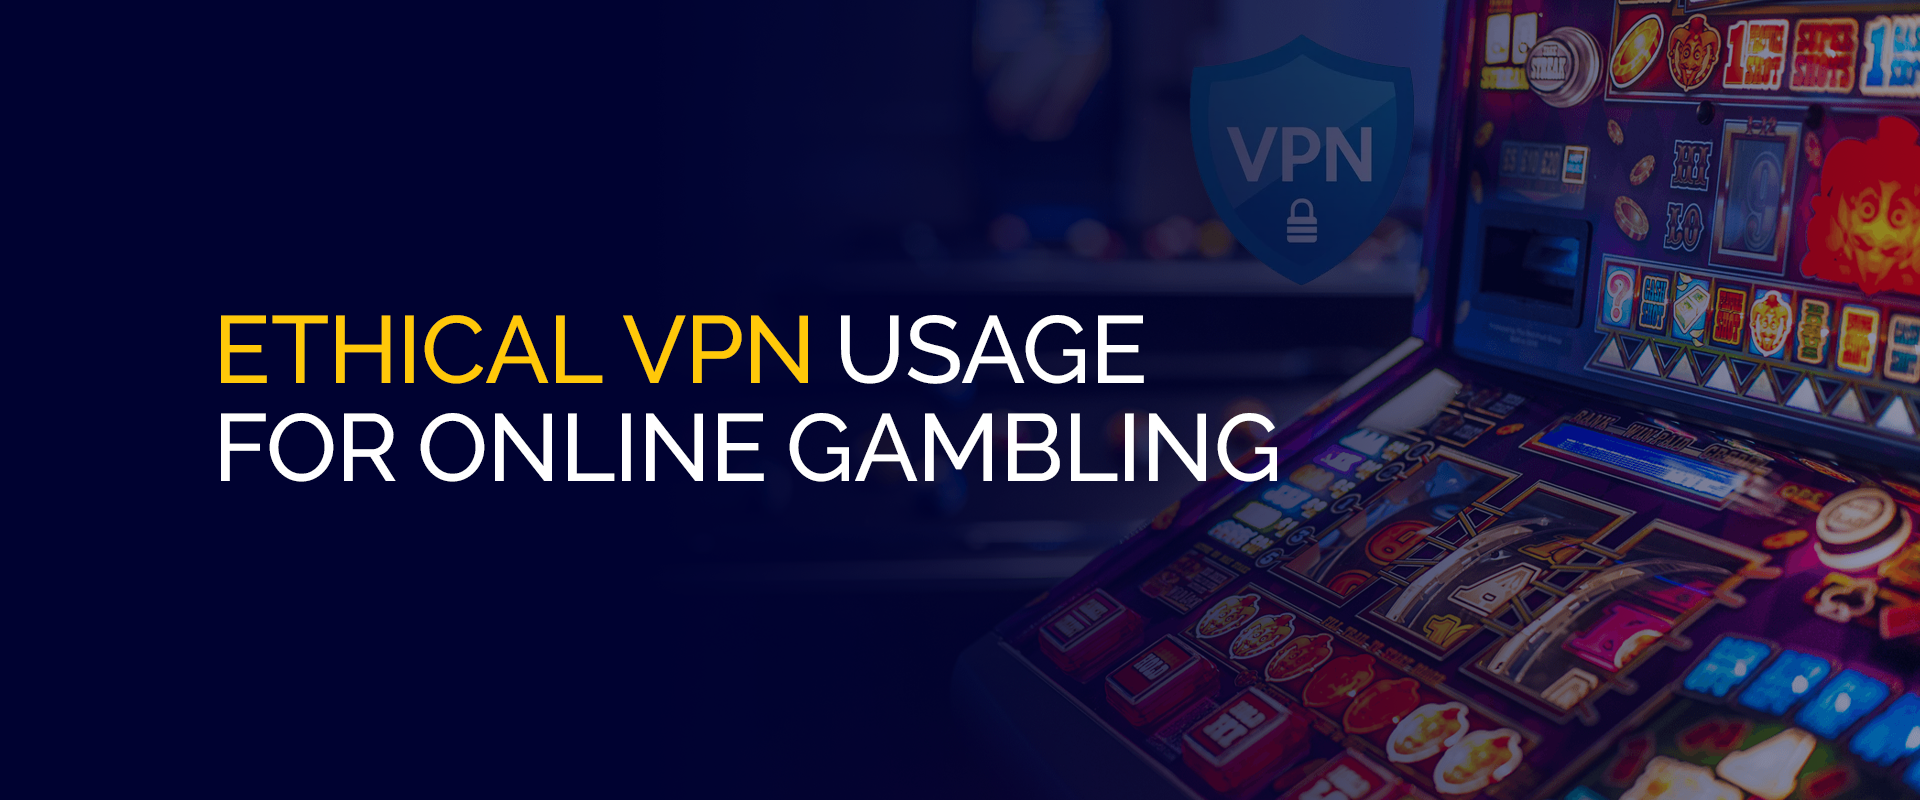 オンライン ギャンブルにおける倫理的な VPN の使用